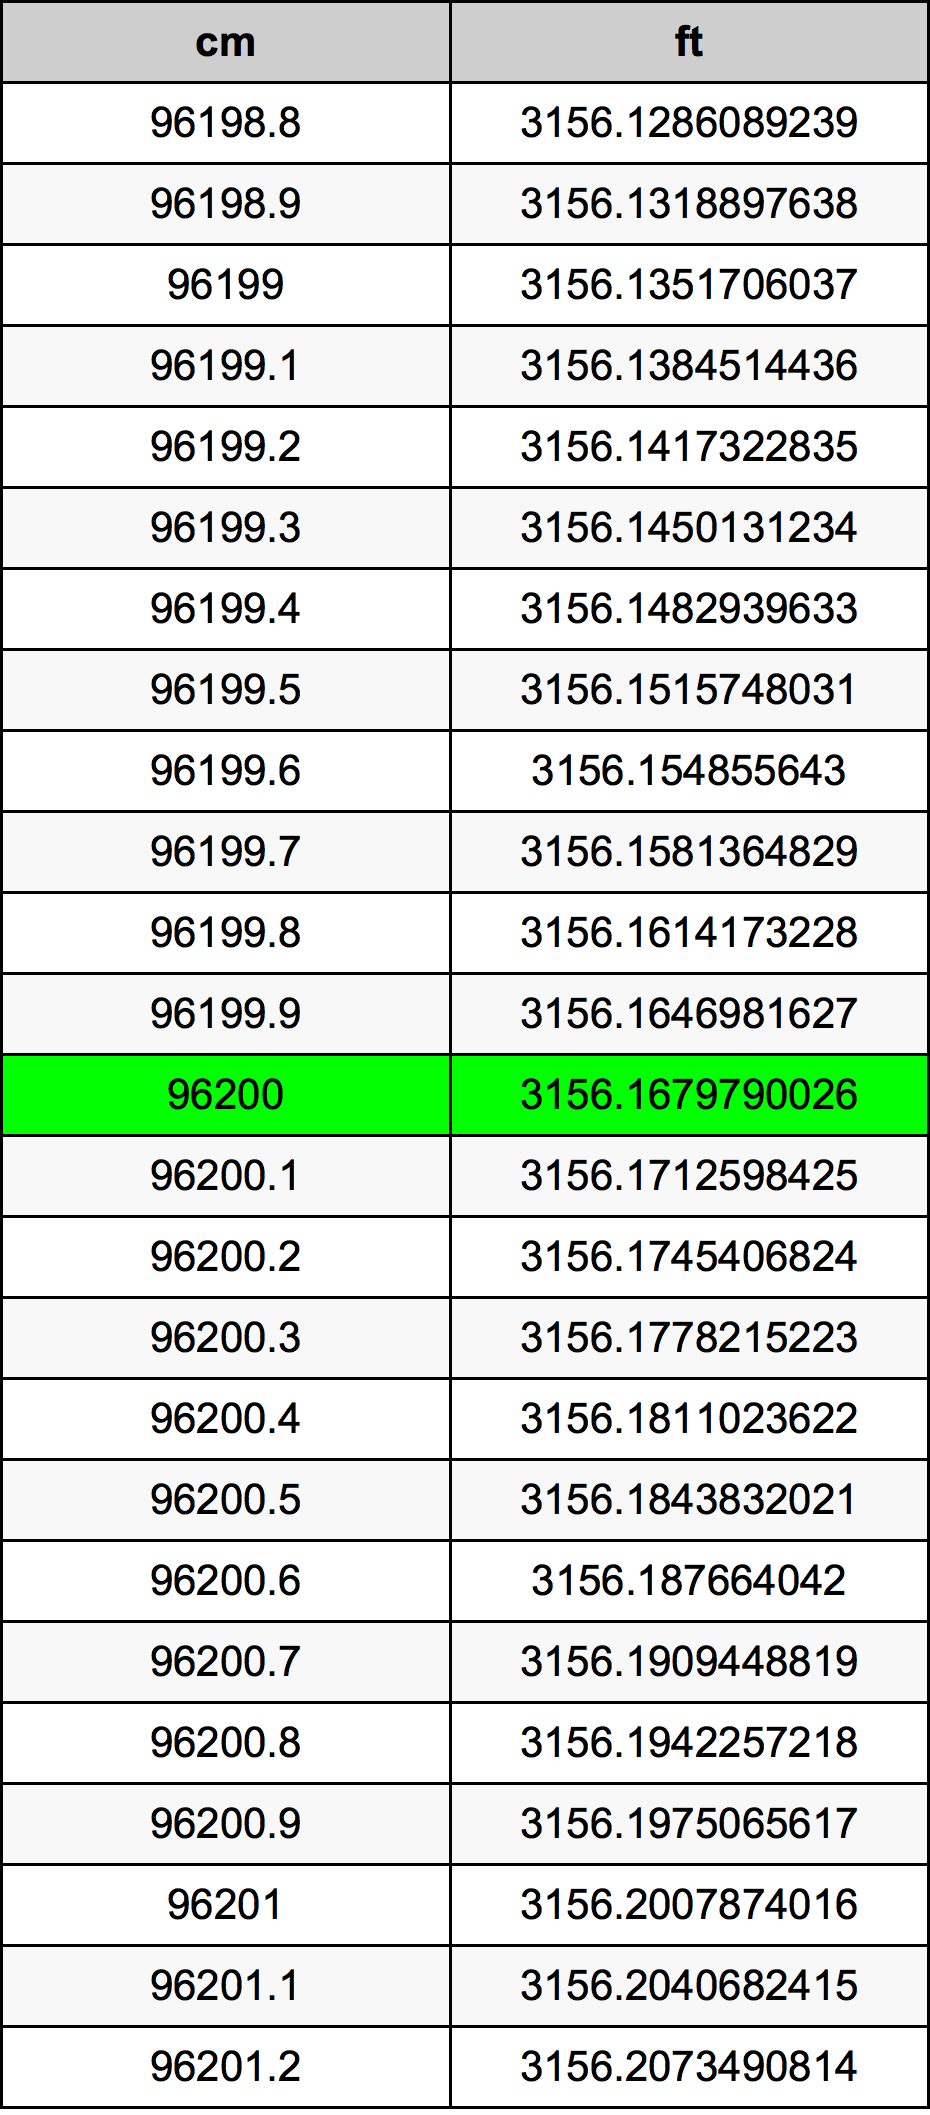 96200 Centiméter átszámítási táblázat